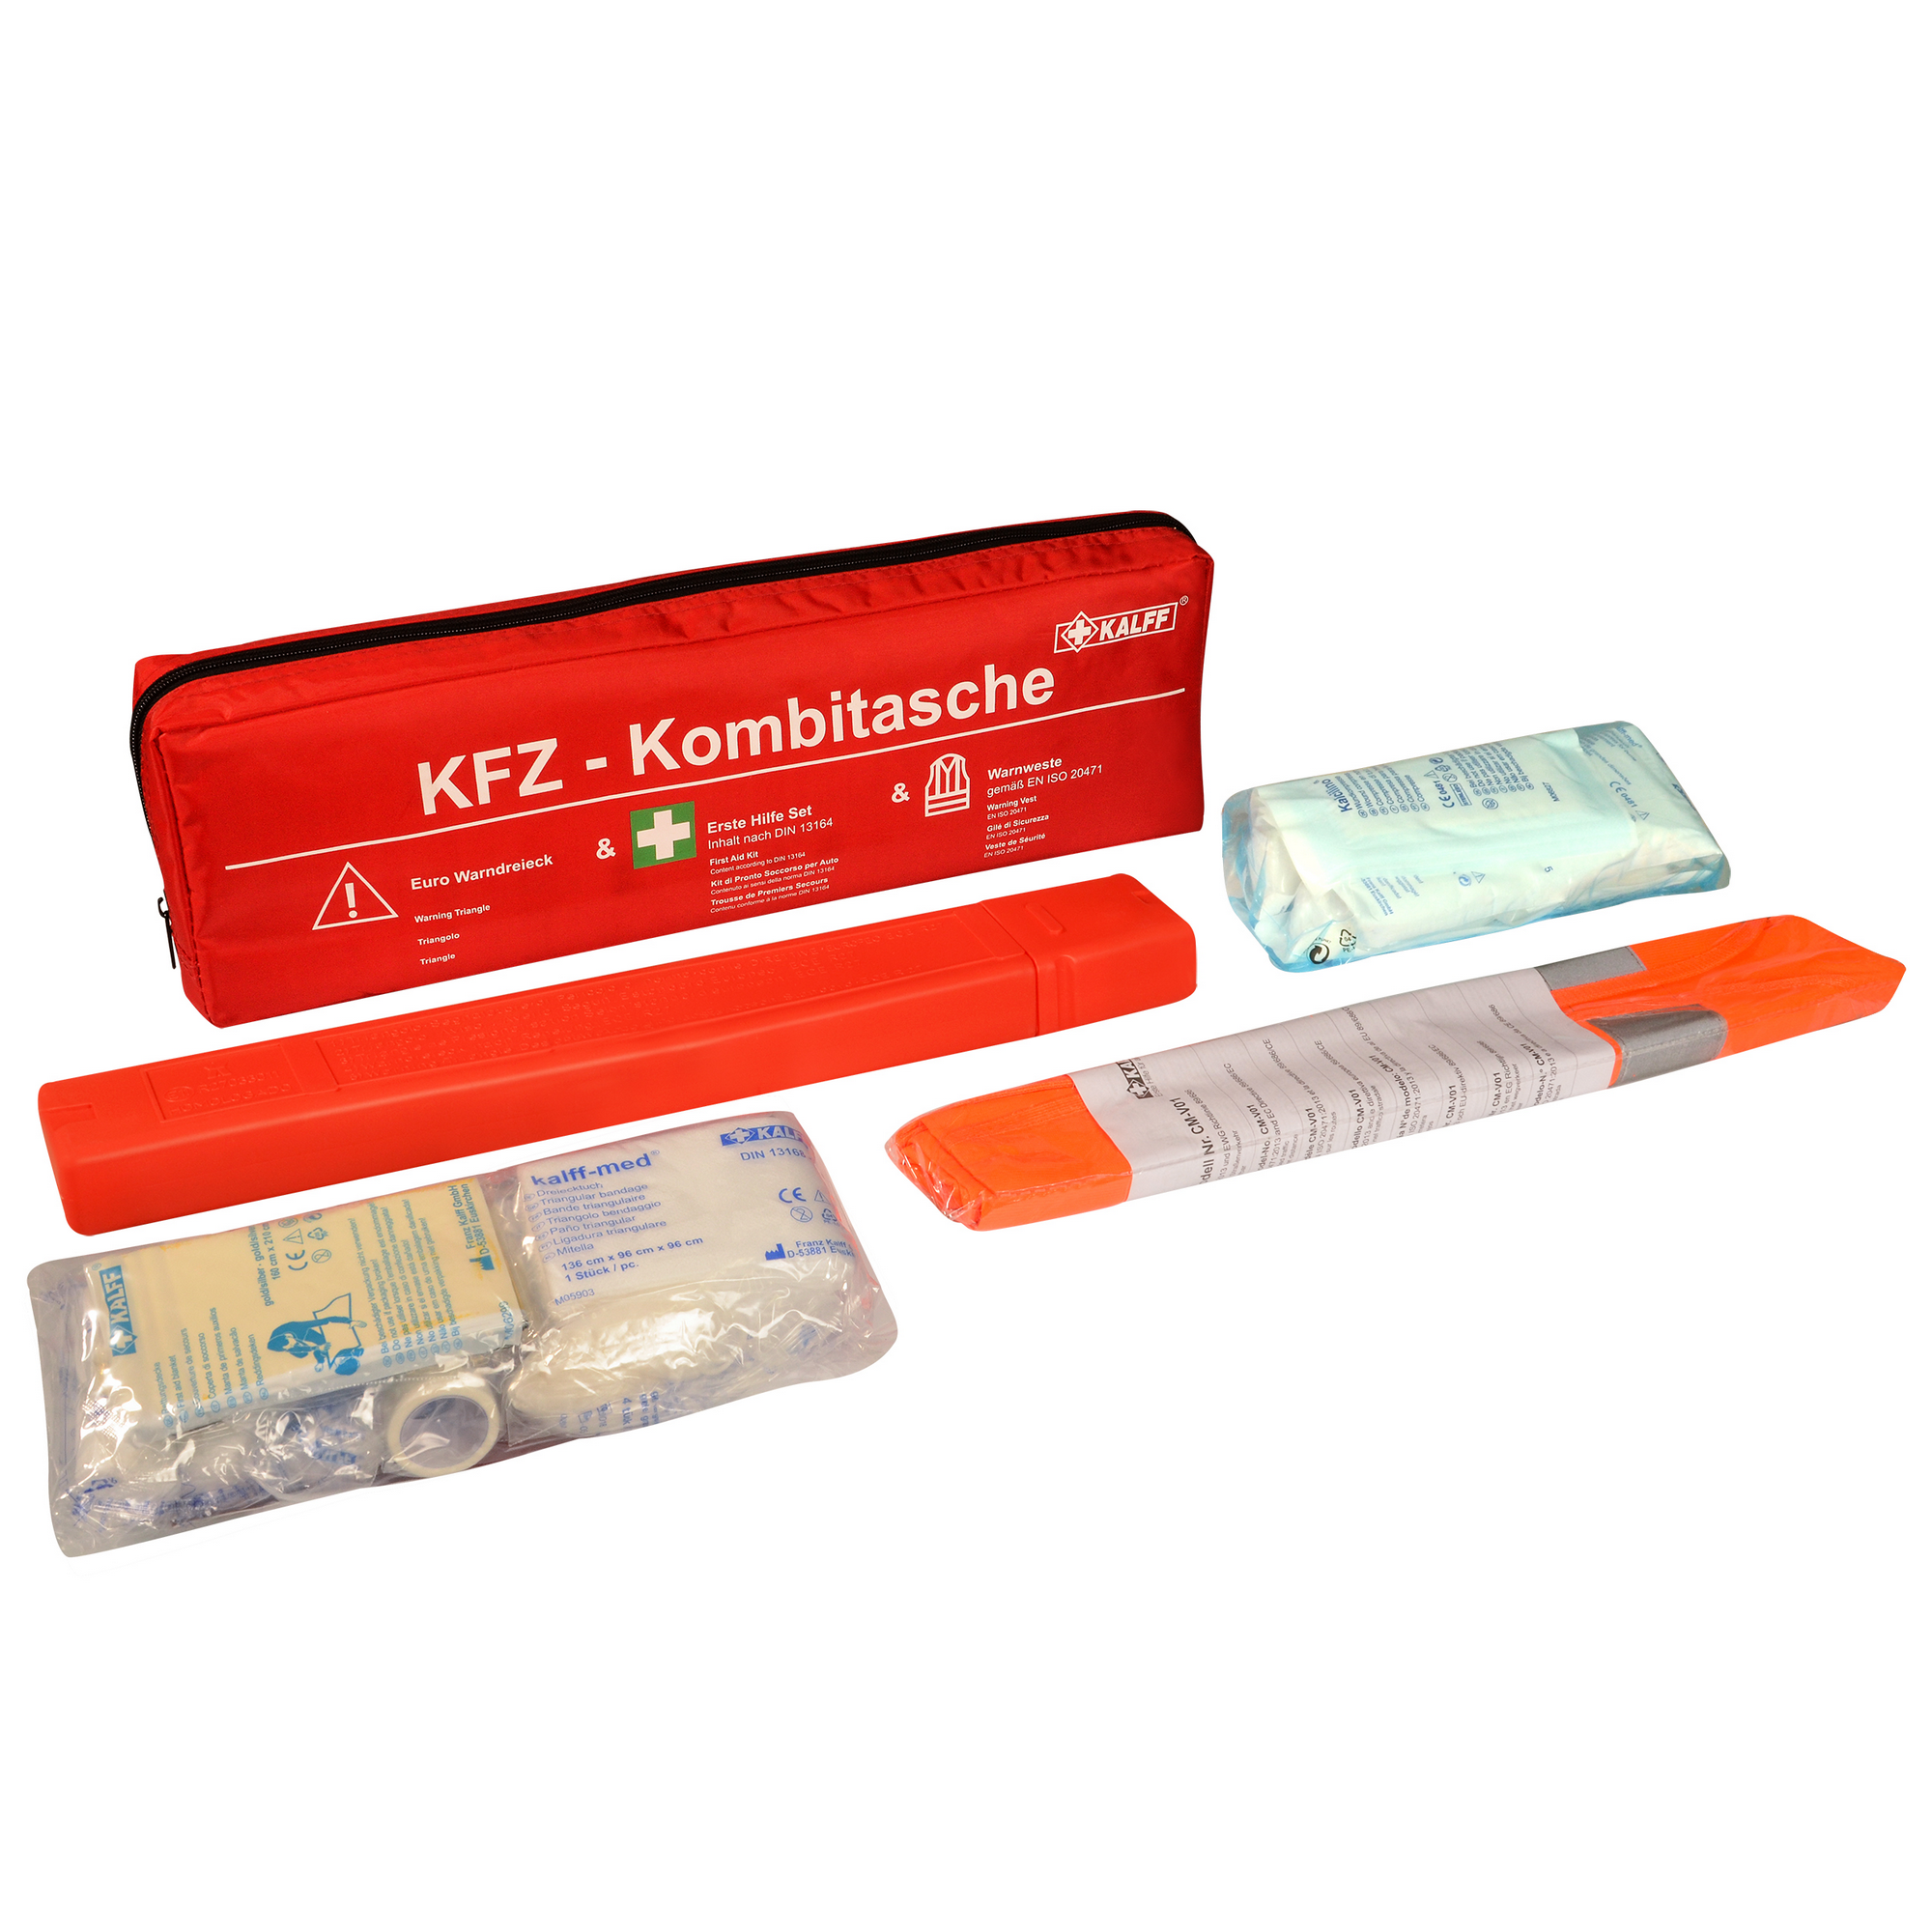 KFZ-Kombitasche 'Trio Compact' mit Warnweste und Warndreieck